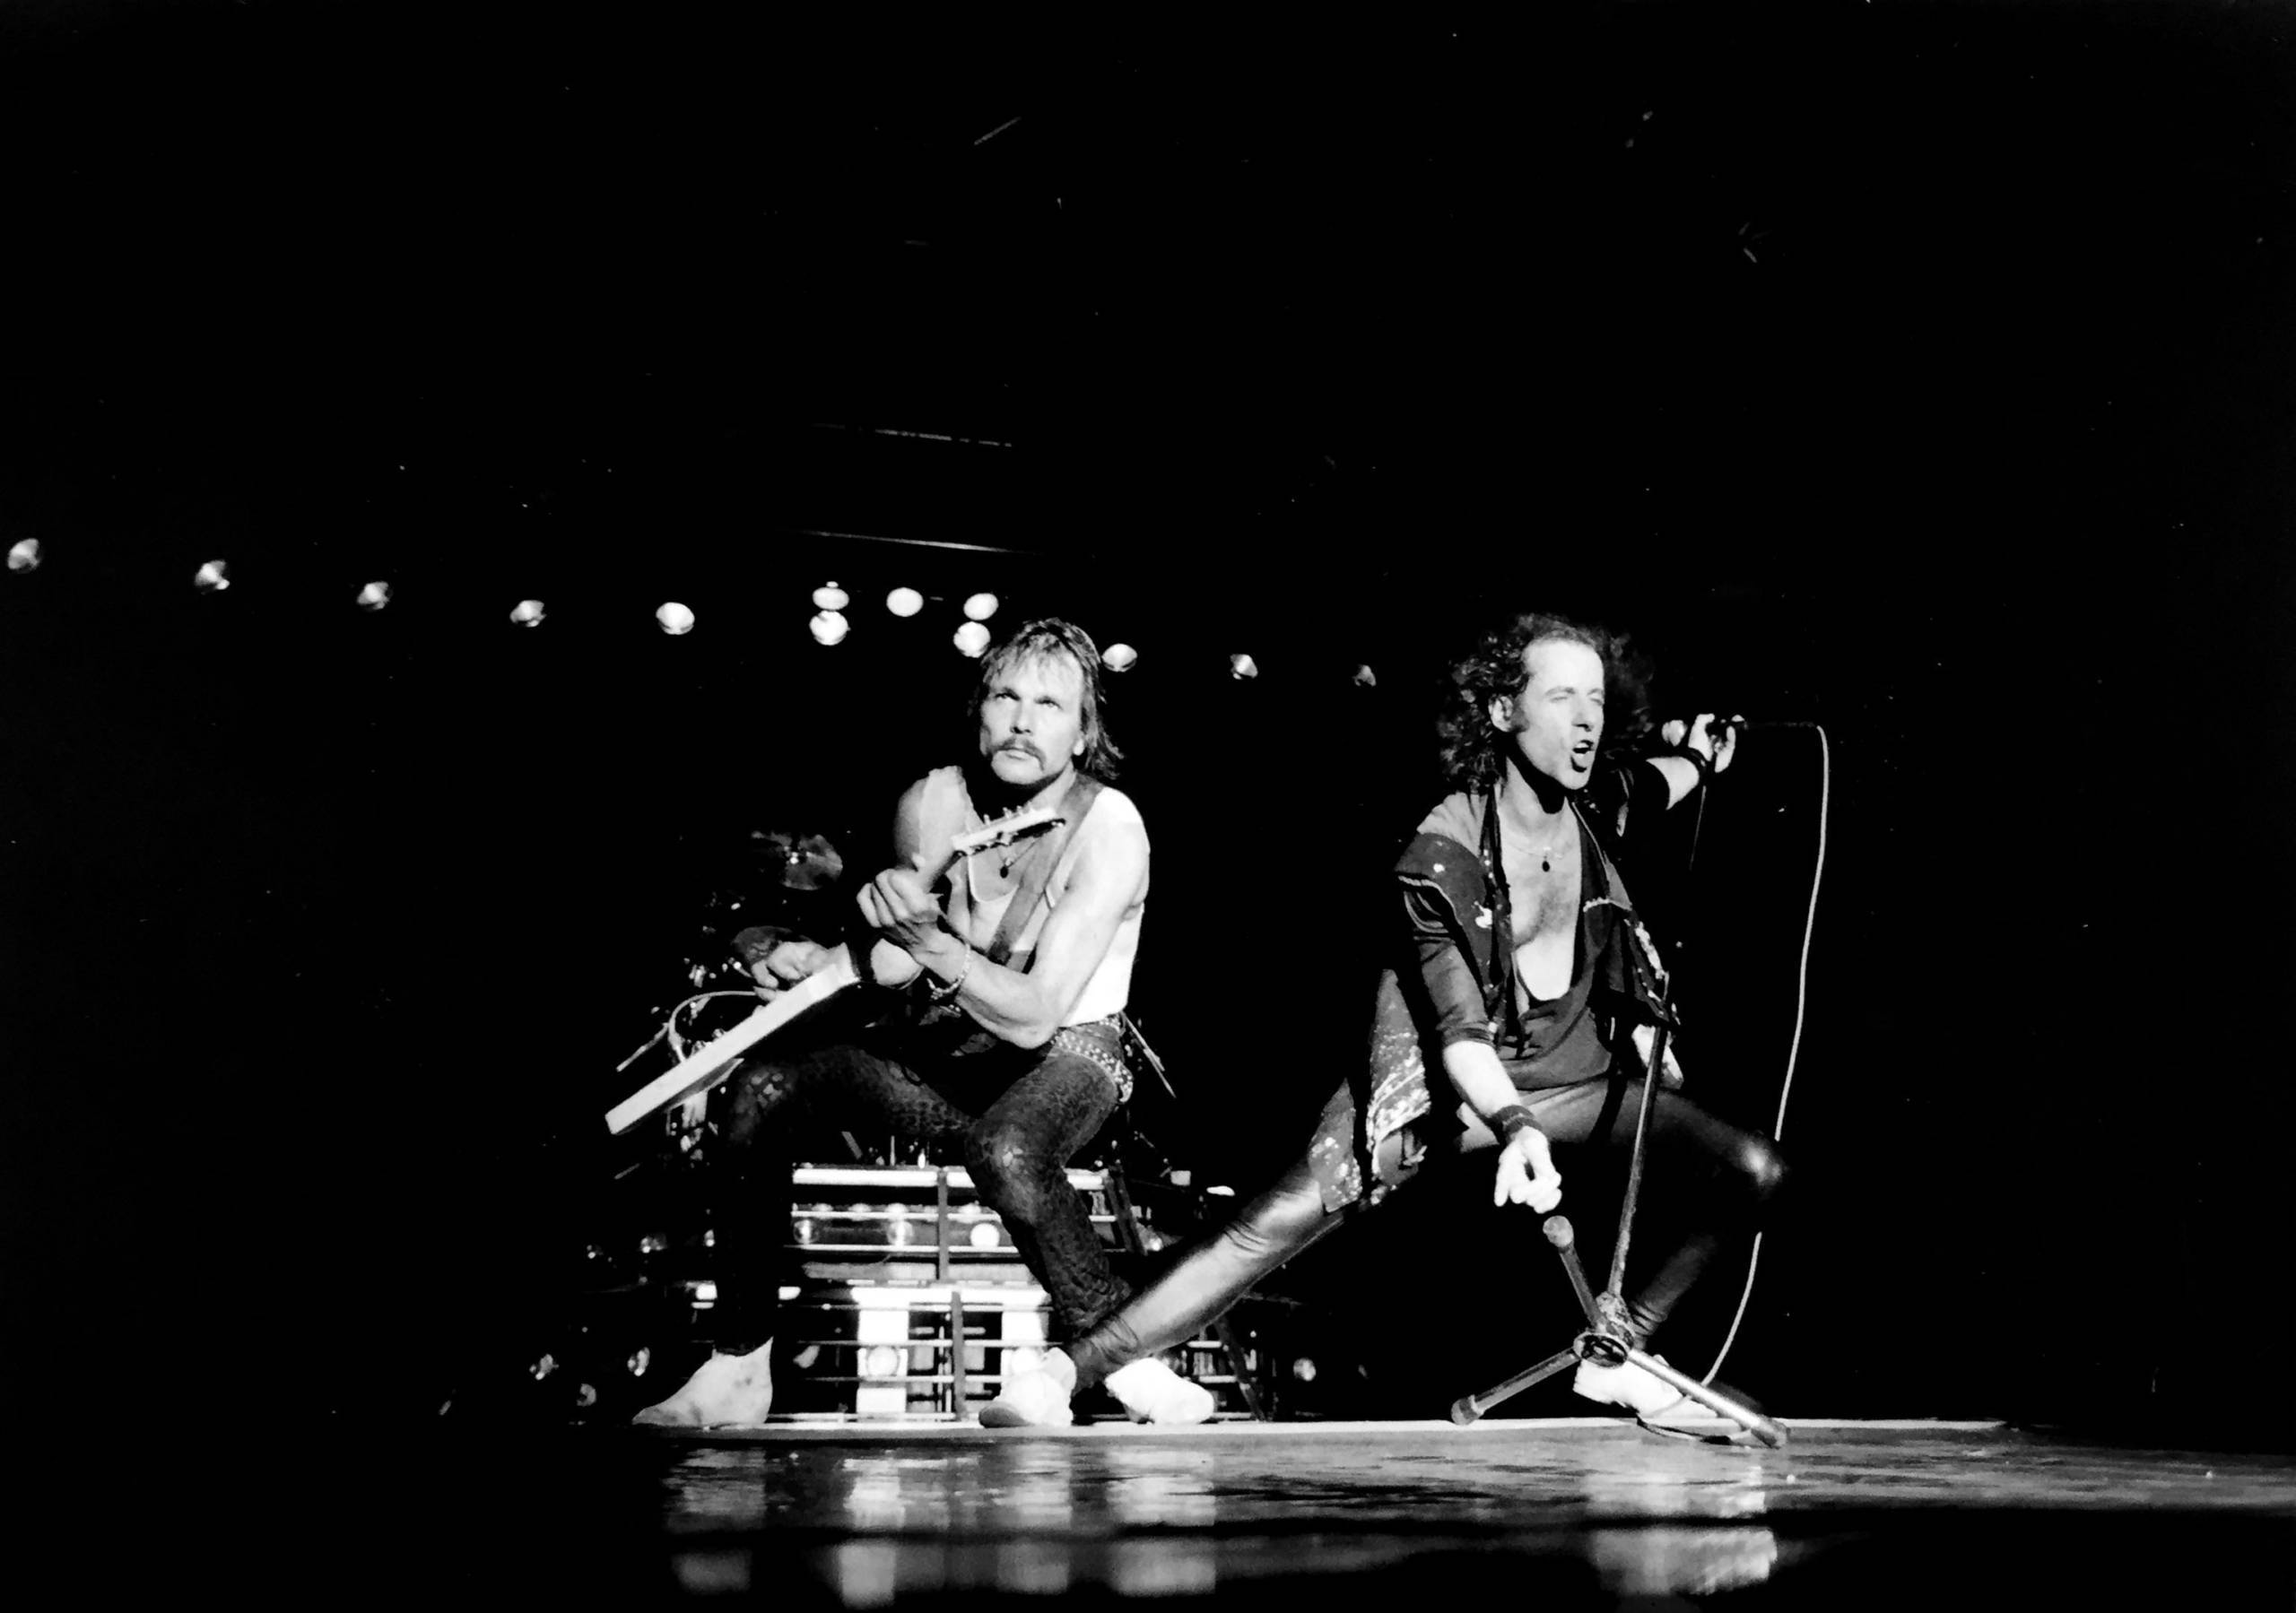 2015 feiern die Scorpions ihr 50. Bühnen-Jubiläum – mit einem exklusiven Club-Konzert und Deluxe-Box-Sets.